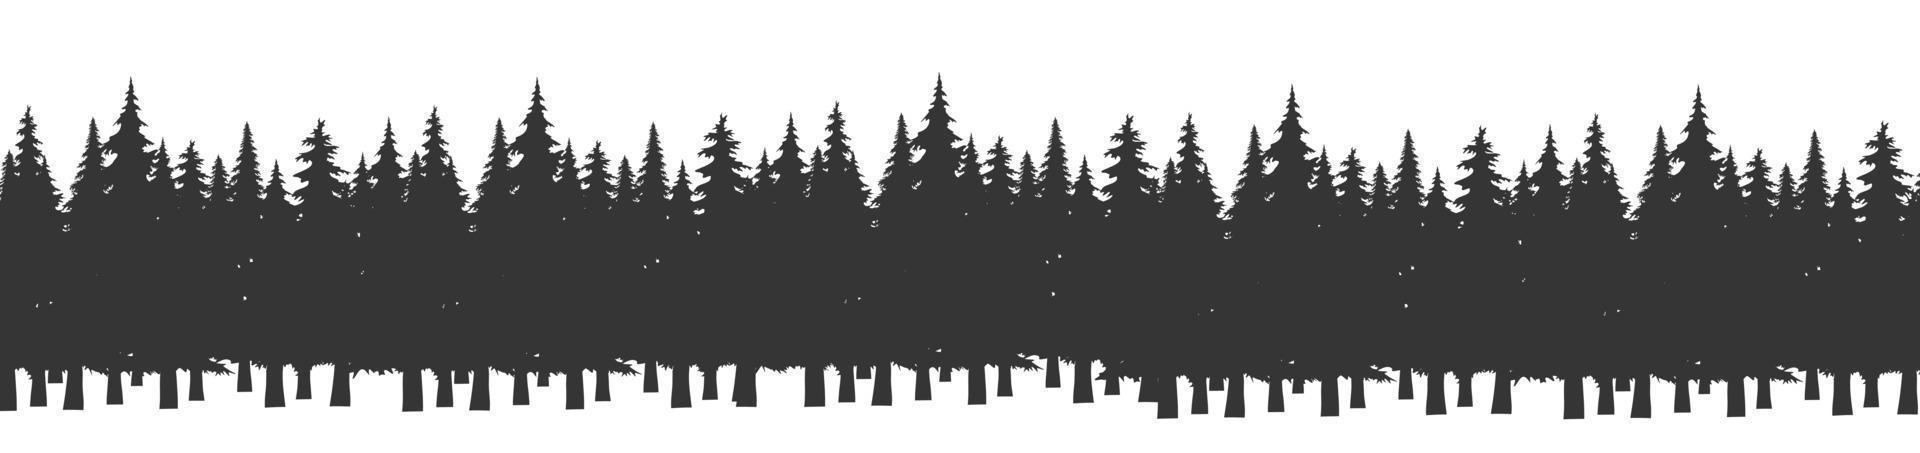 Wald von Weihnachtstannenbäumen Silhouette. Nadelfichtenpanorama. Park aus immergrünem Holz. Vektor auf weißem Hintergrund